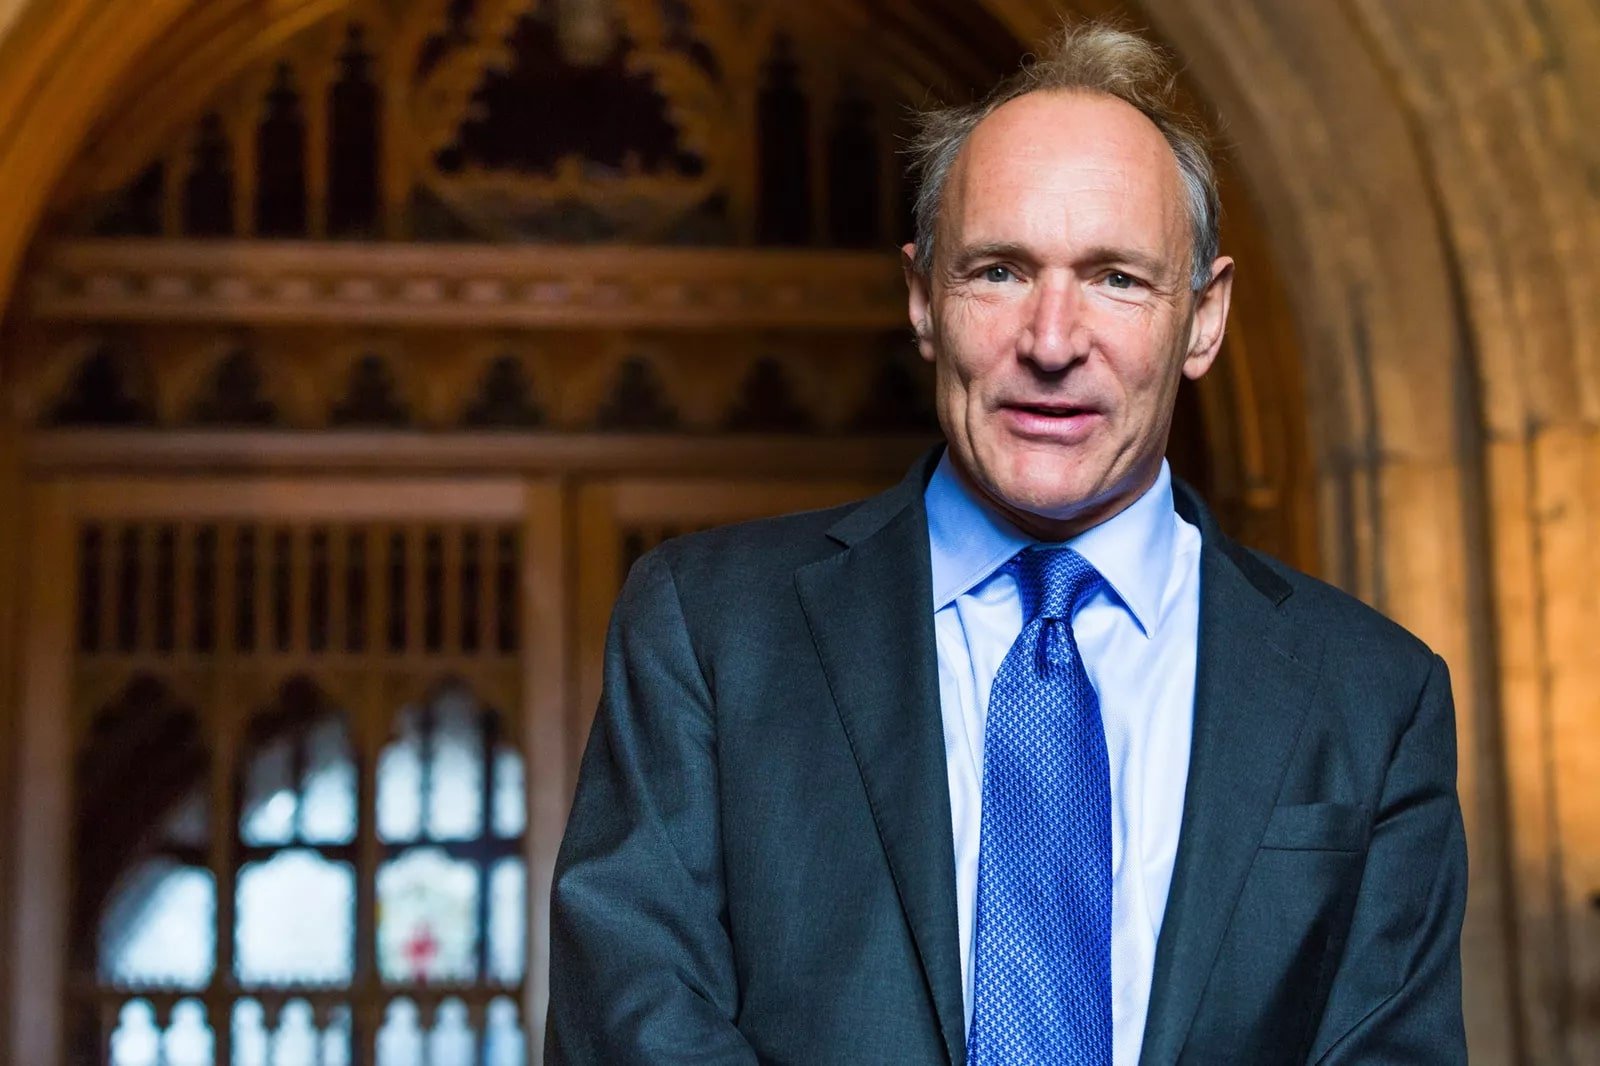 a imagem é uma foto de Tim Berners-Lee, um homem branco de cabelos brancos, olhos claros, vestido com um terno azul marinho, camisa social clara e gravata na cor azul. Fonte: Wikimedia Commons